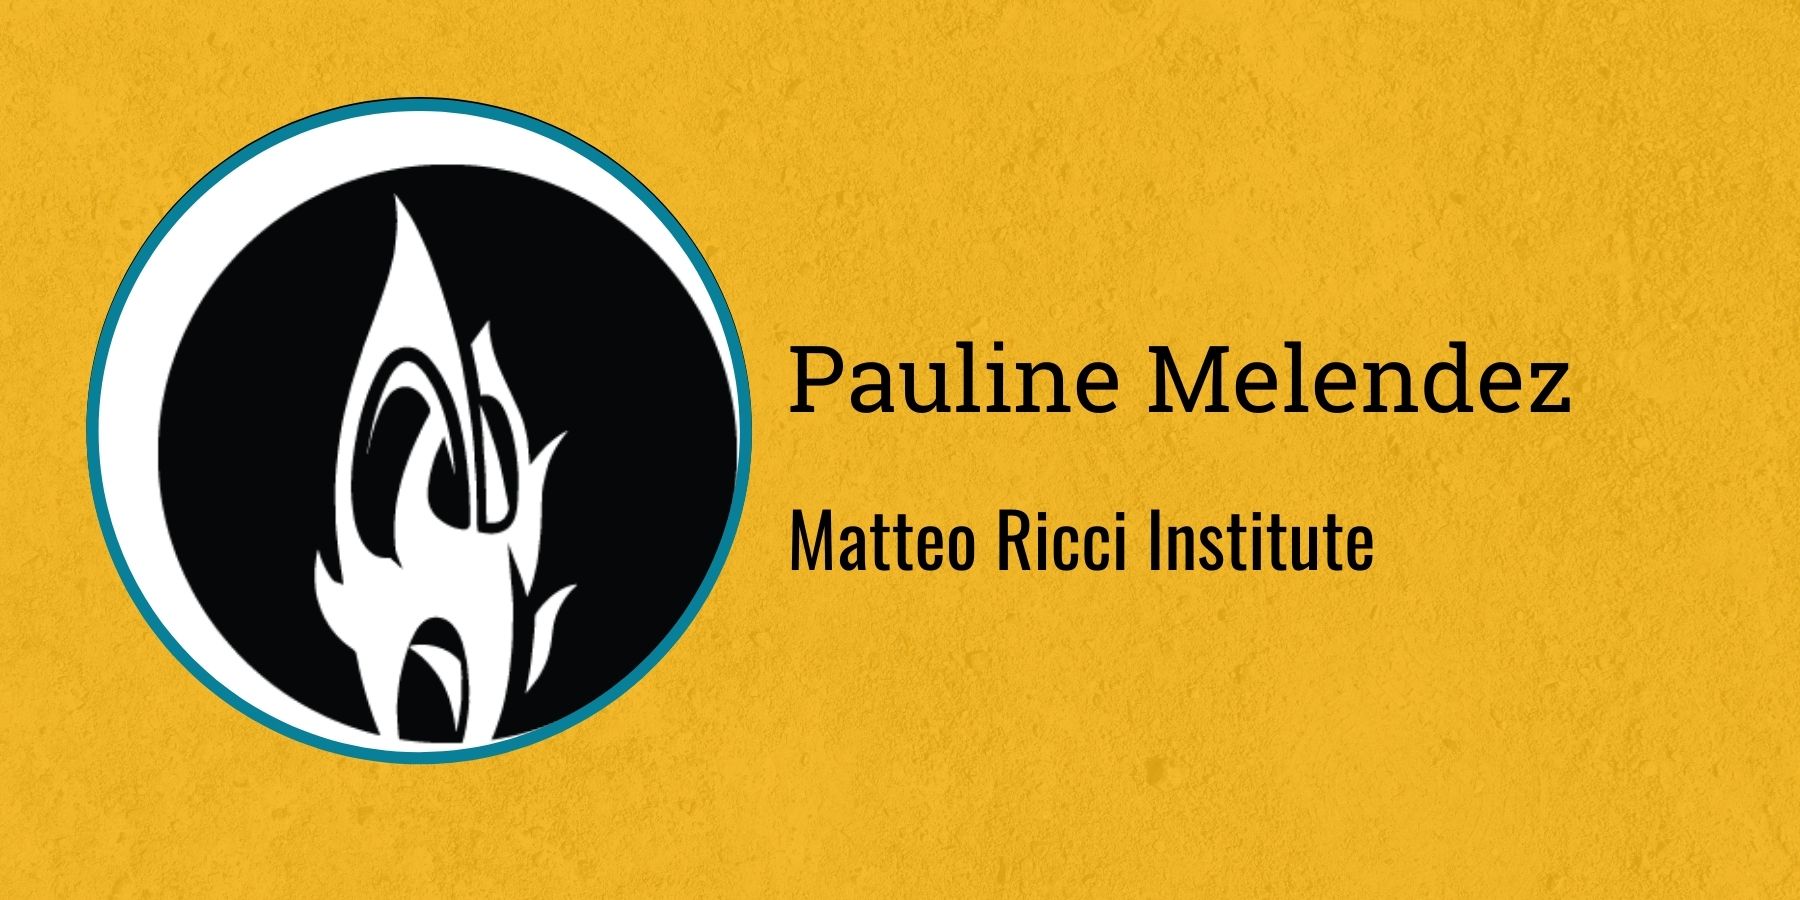 Pauline Melendez
Matteo Ricci Institute